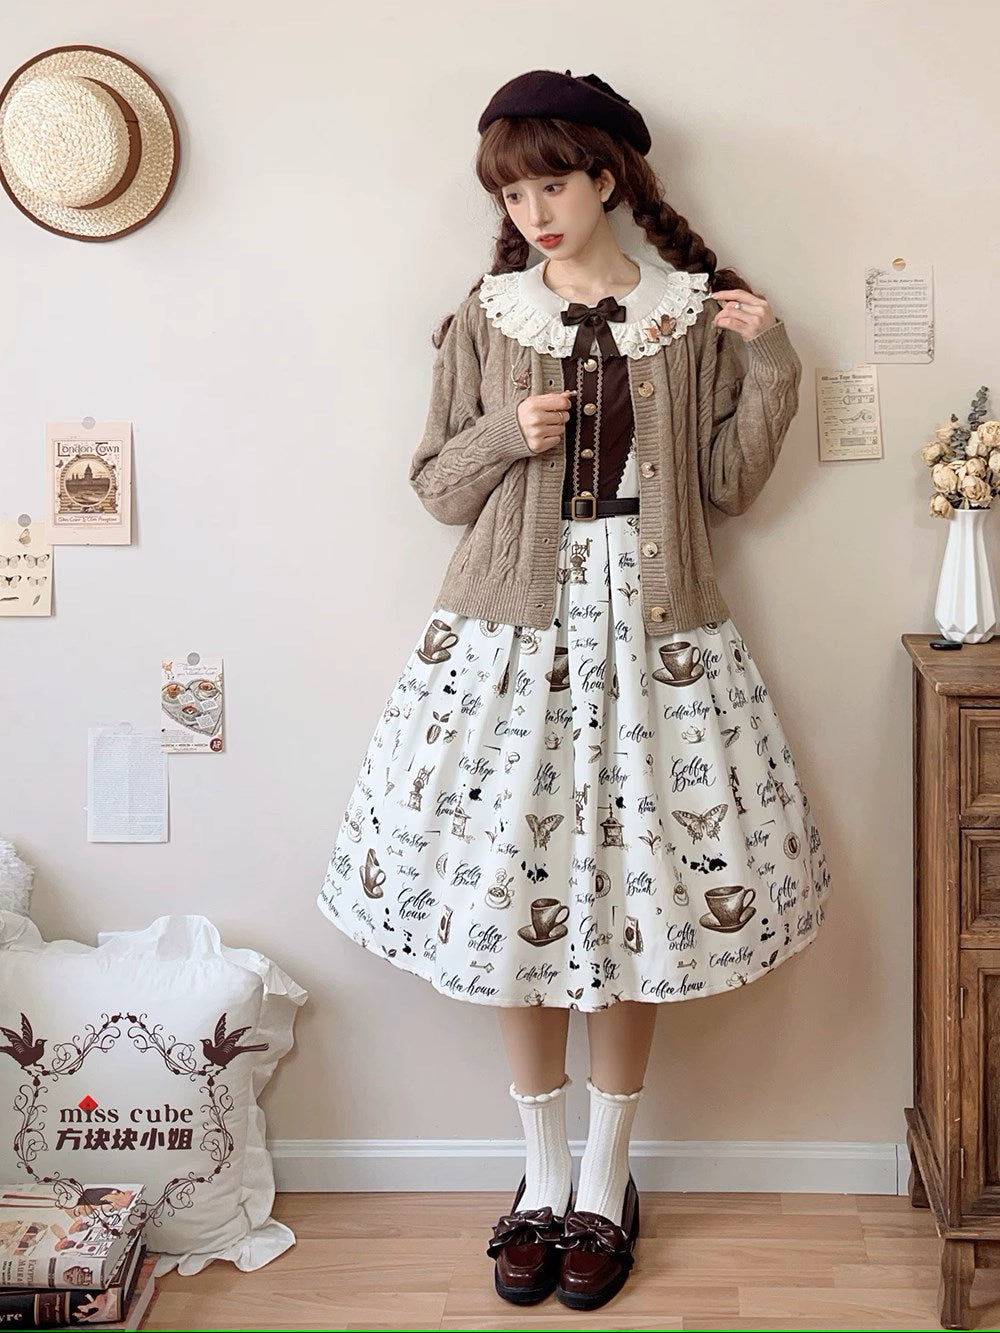 Caramel Latte Sweet Retro Girly Jumper Skirt